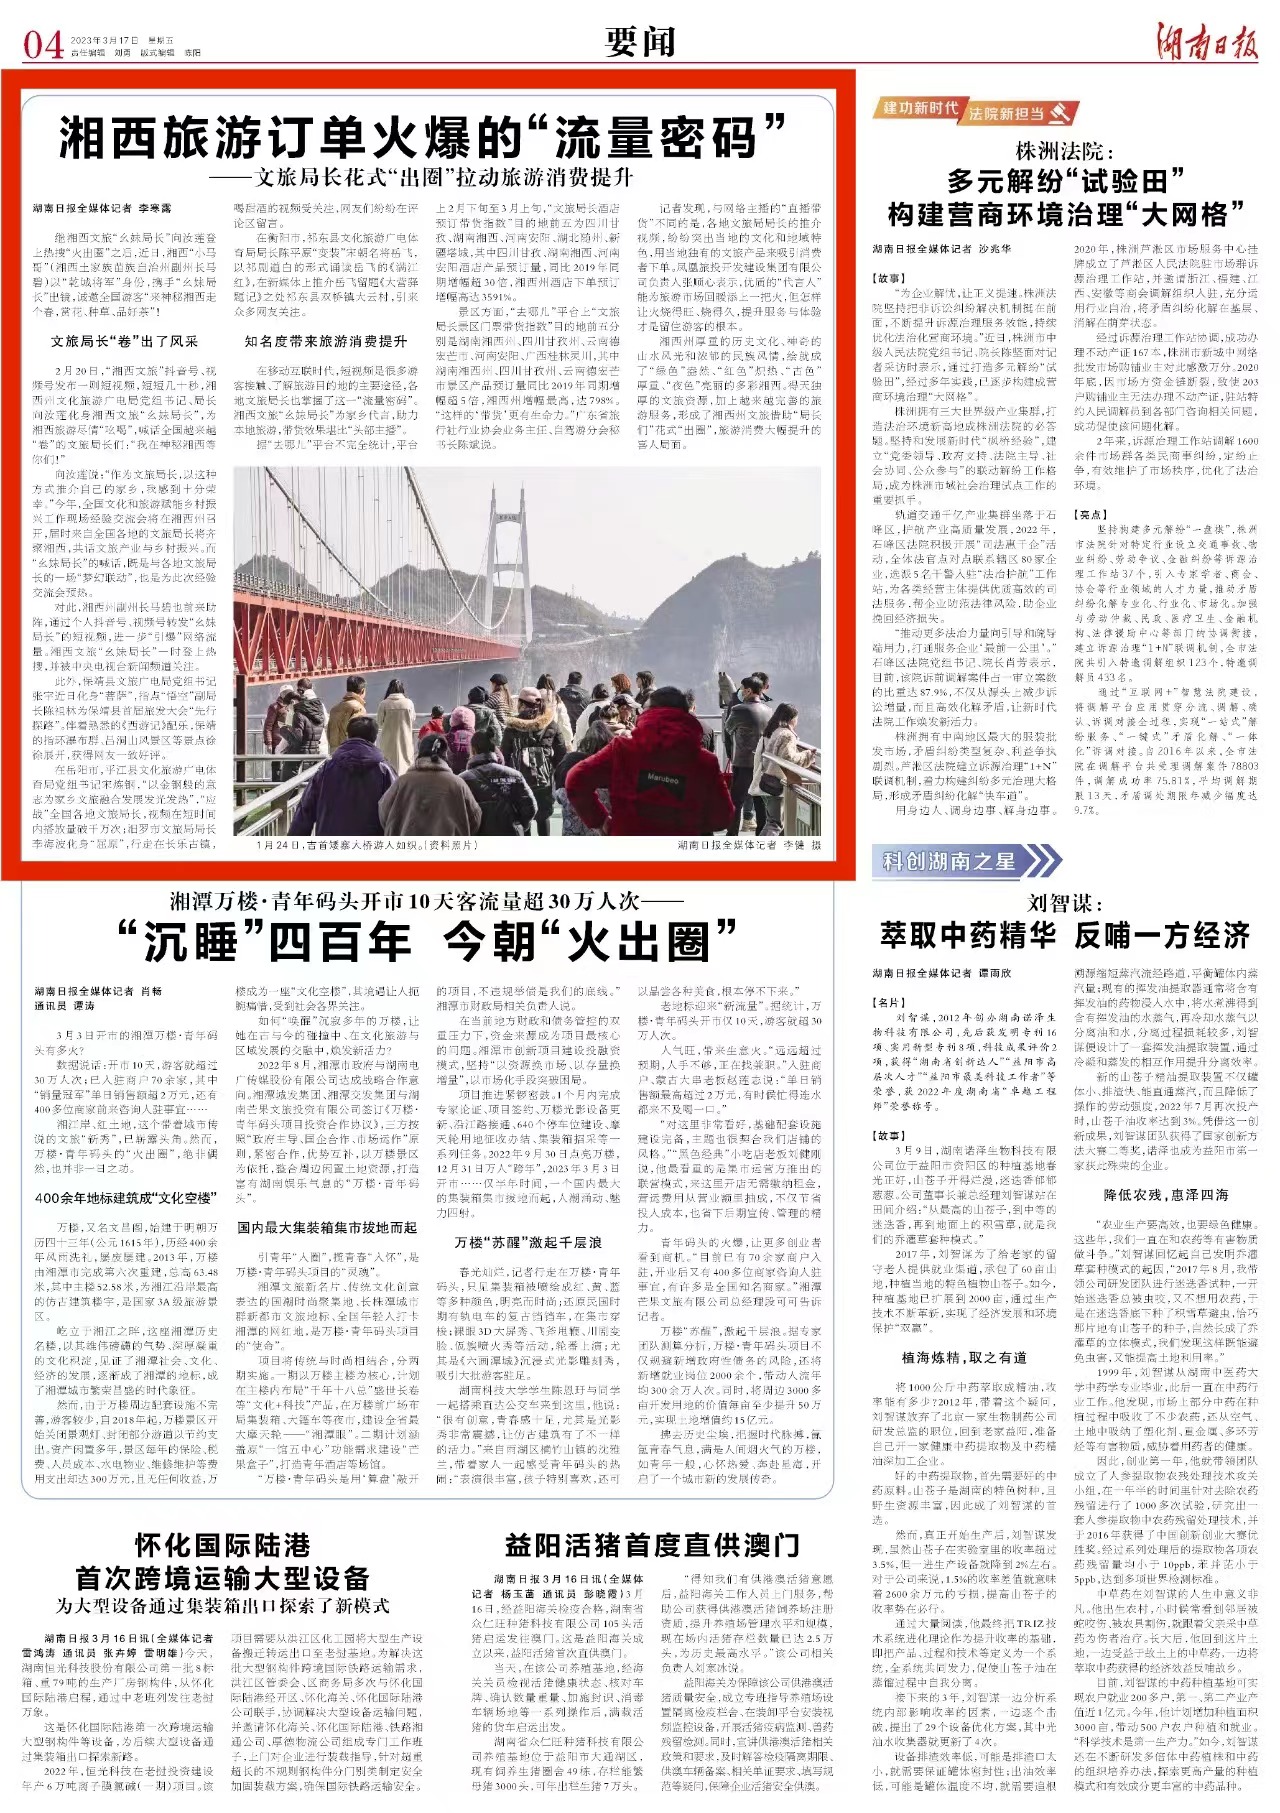 湖南日报要闻版头条丨湘西旅游订单火爆的“流量密码”——文旅局长花式“出圈”拉动旅游消费提升